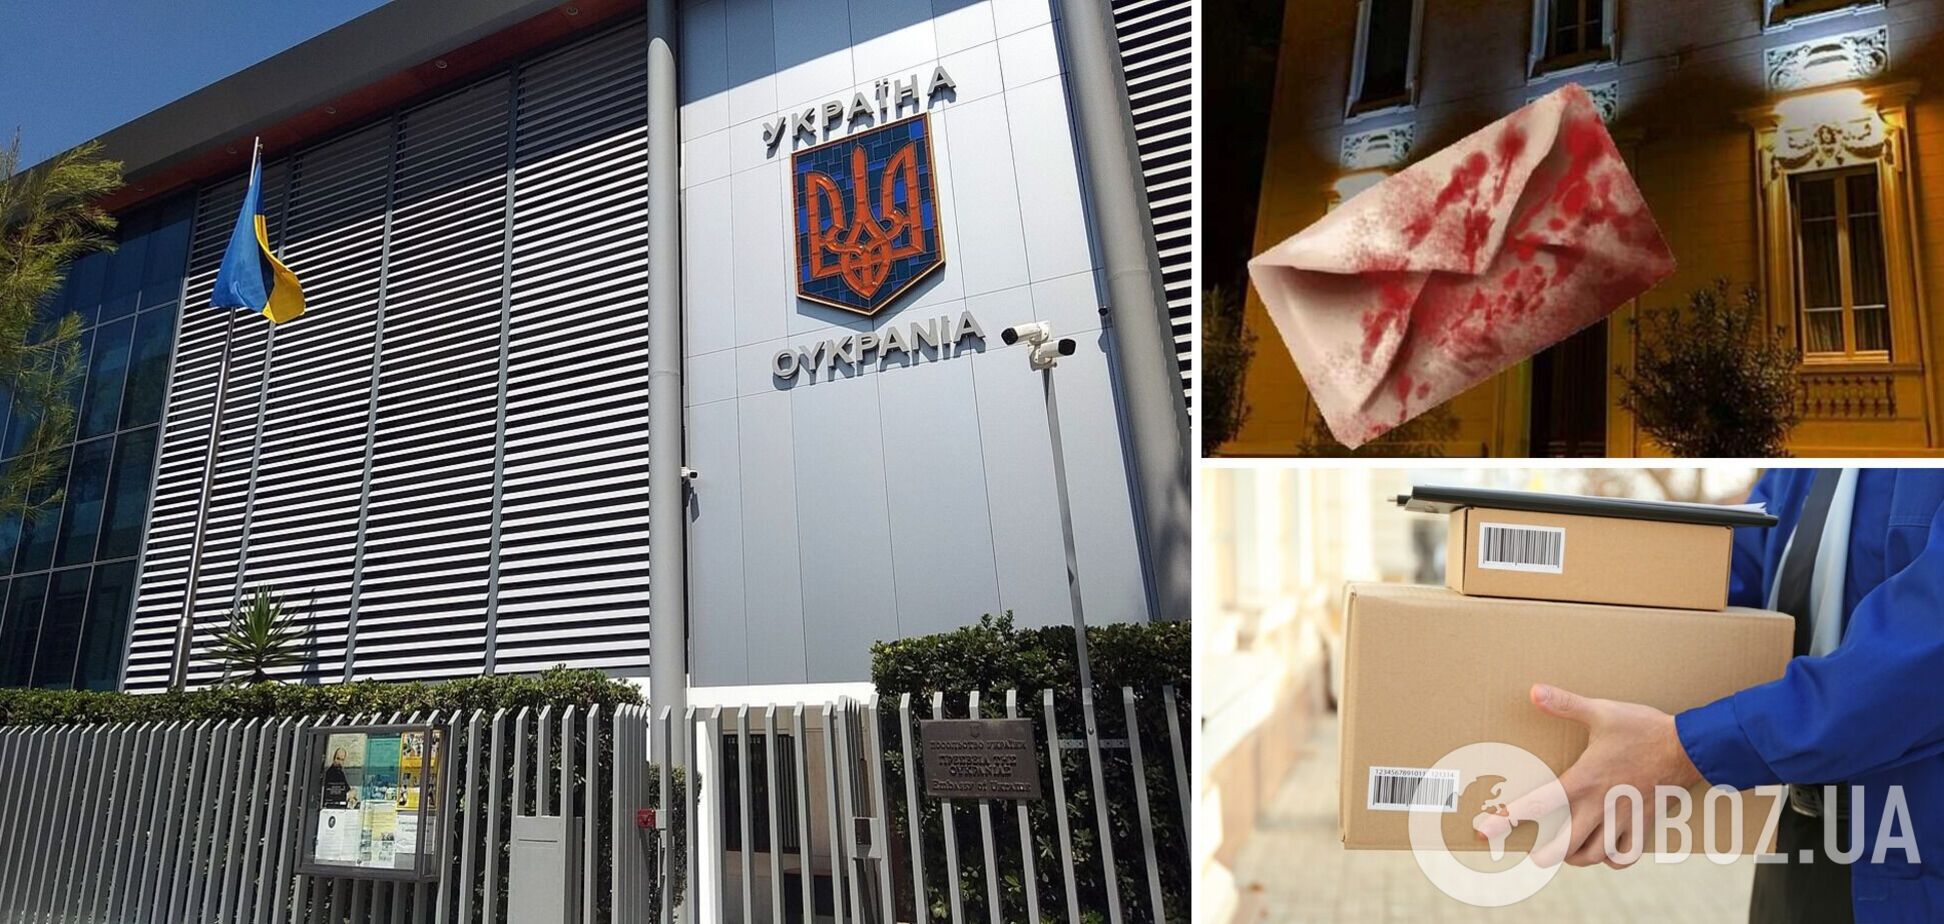 Посольство Украины в Греции получило окровавленный пакет: полиция начала следственные действия